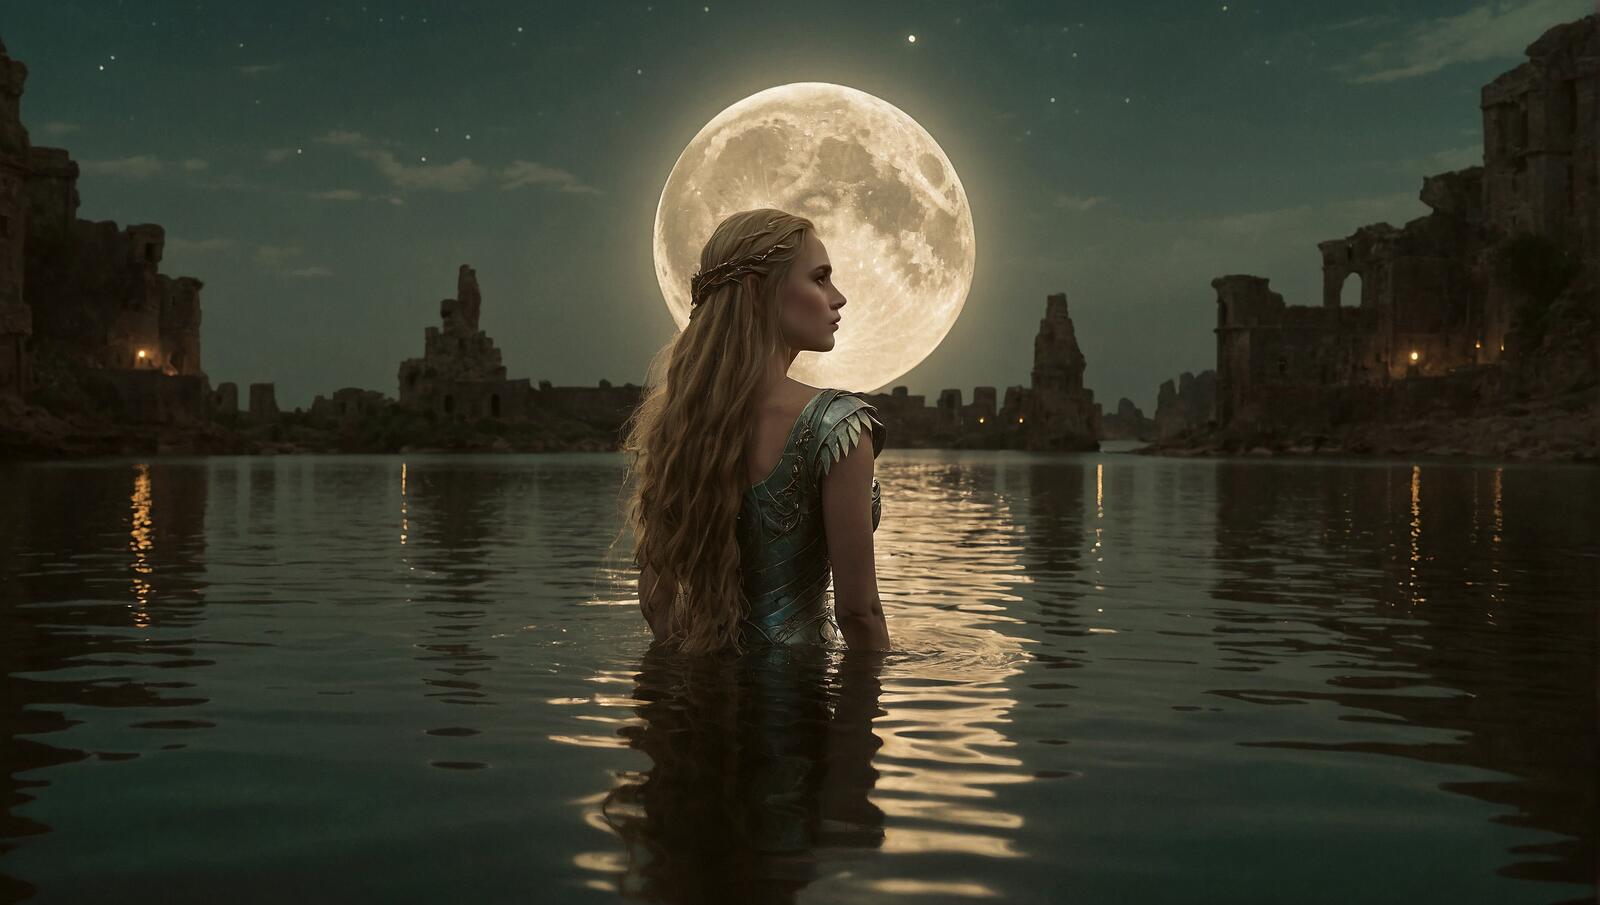 Бесплатное фото Девушка в воде, повернув голову, смотрит на луну.